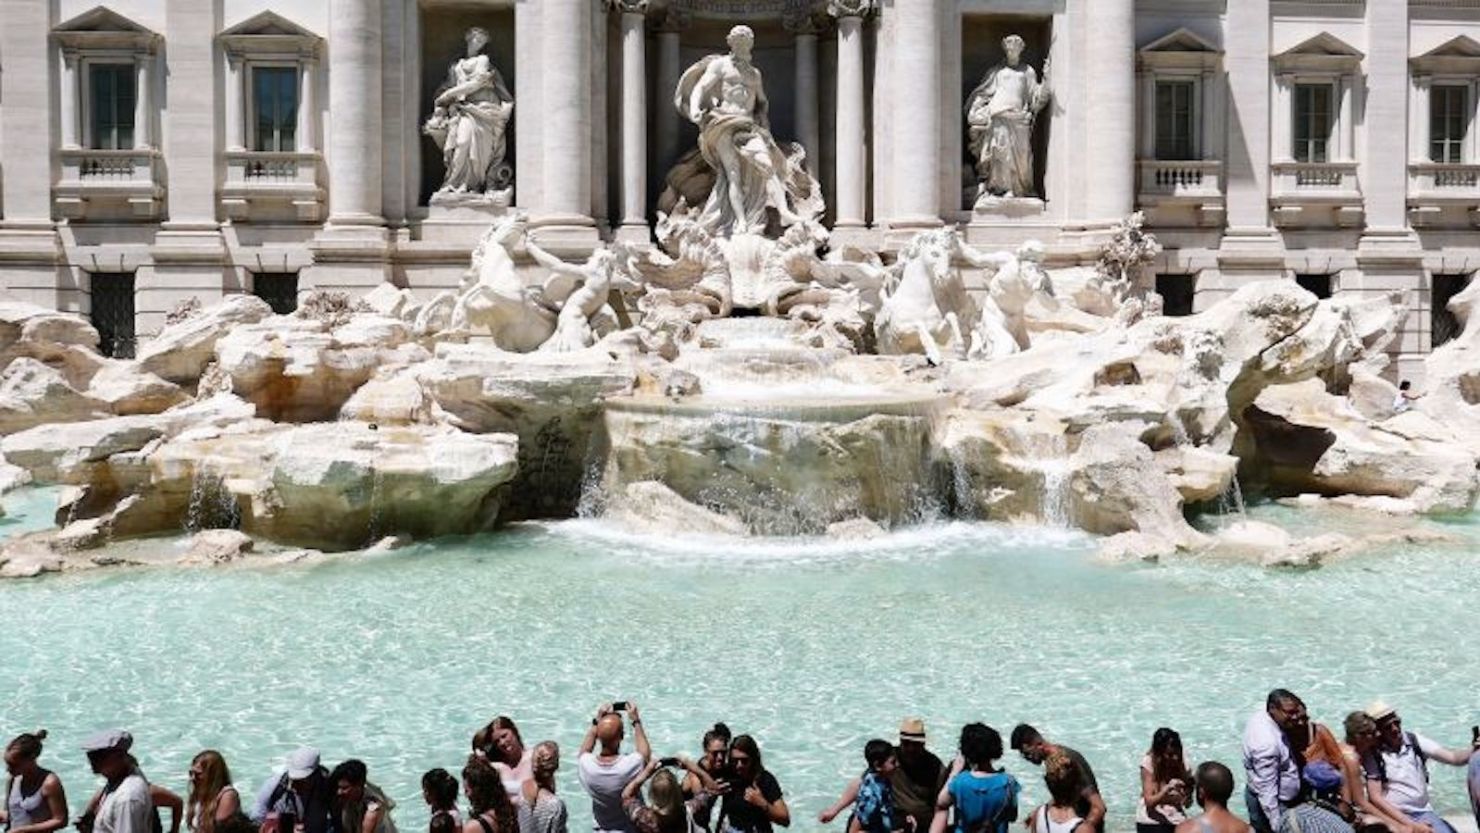 La Fontana de Trevi se ha convertido en una fuente de discordia en Italia, ya que los turistas le faltan el respeto al famoso monumento.